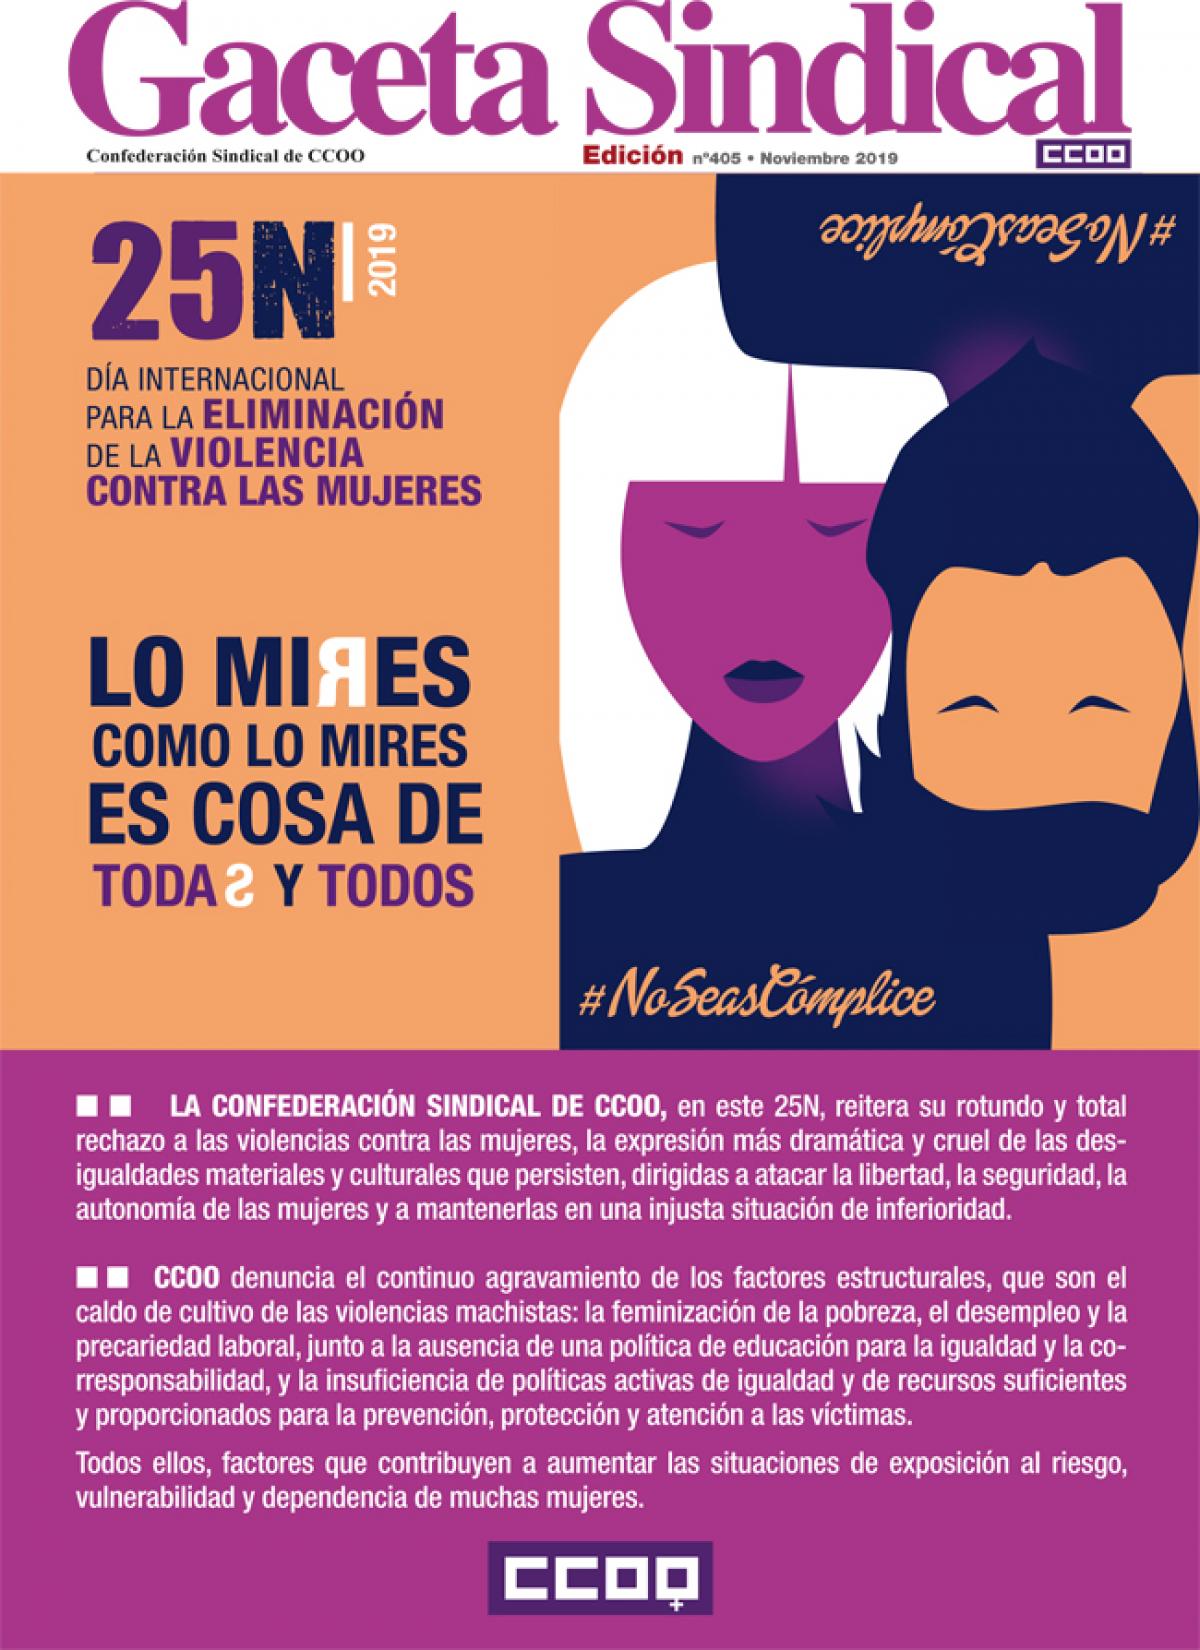 Gaceta Sindical Digital n 405 25N Da Internacional para la eliminacin de la violencia contra las mujeres